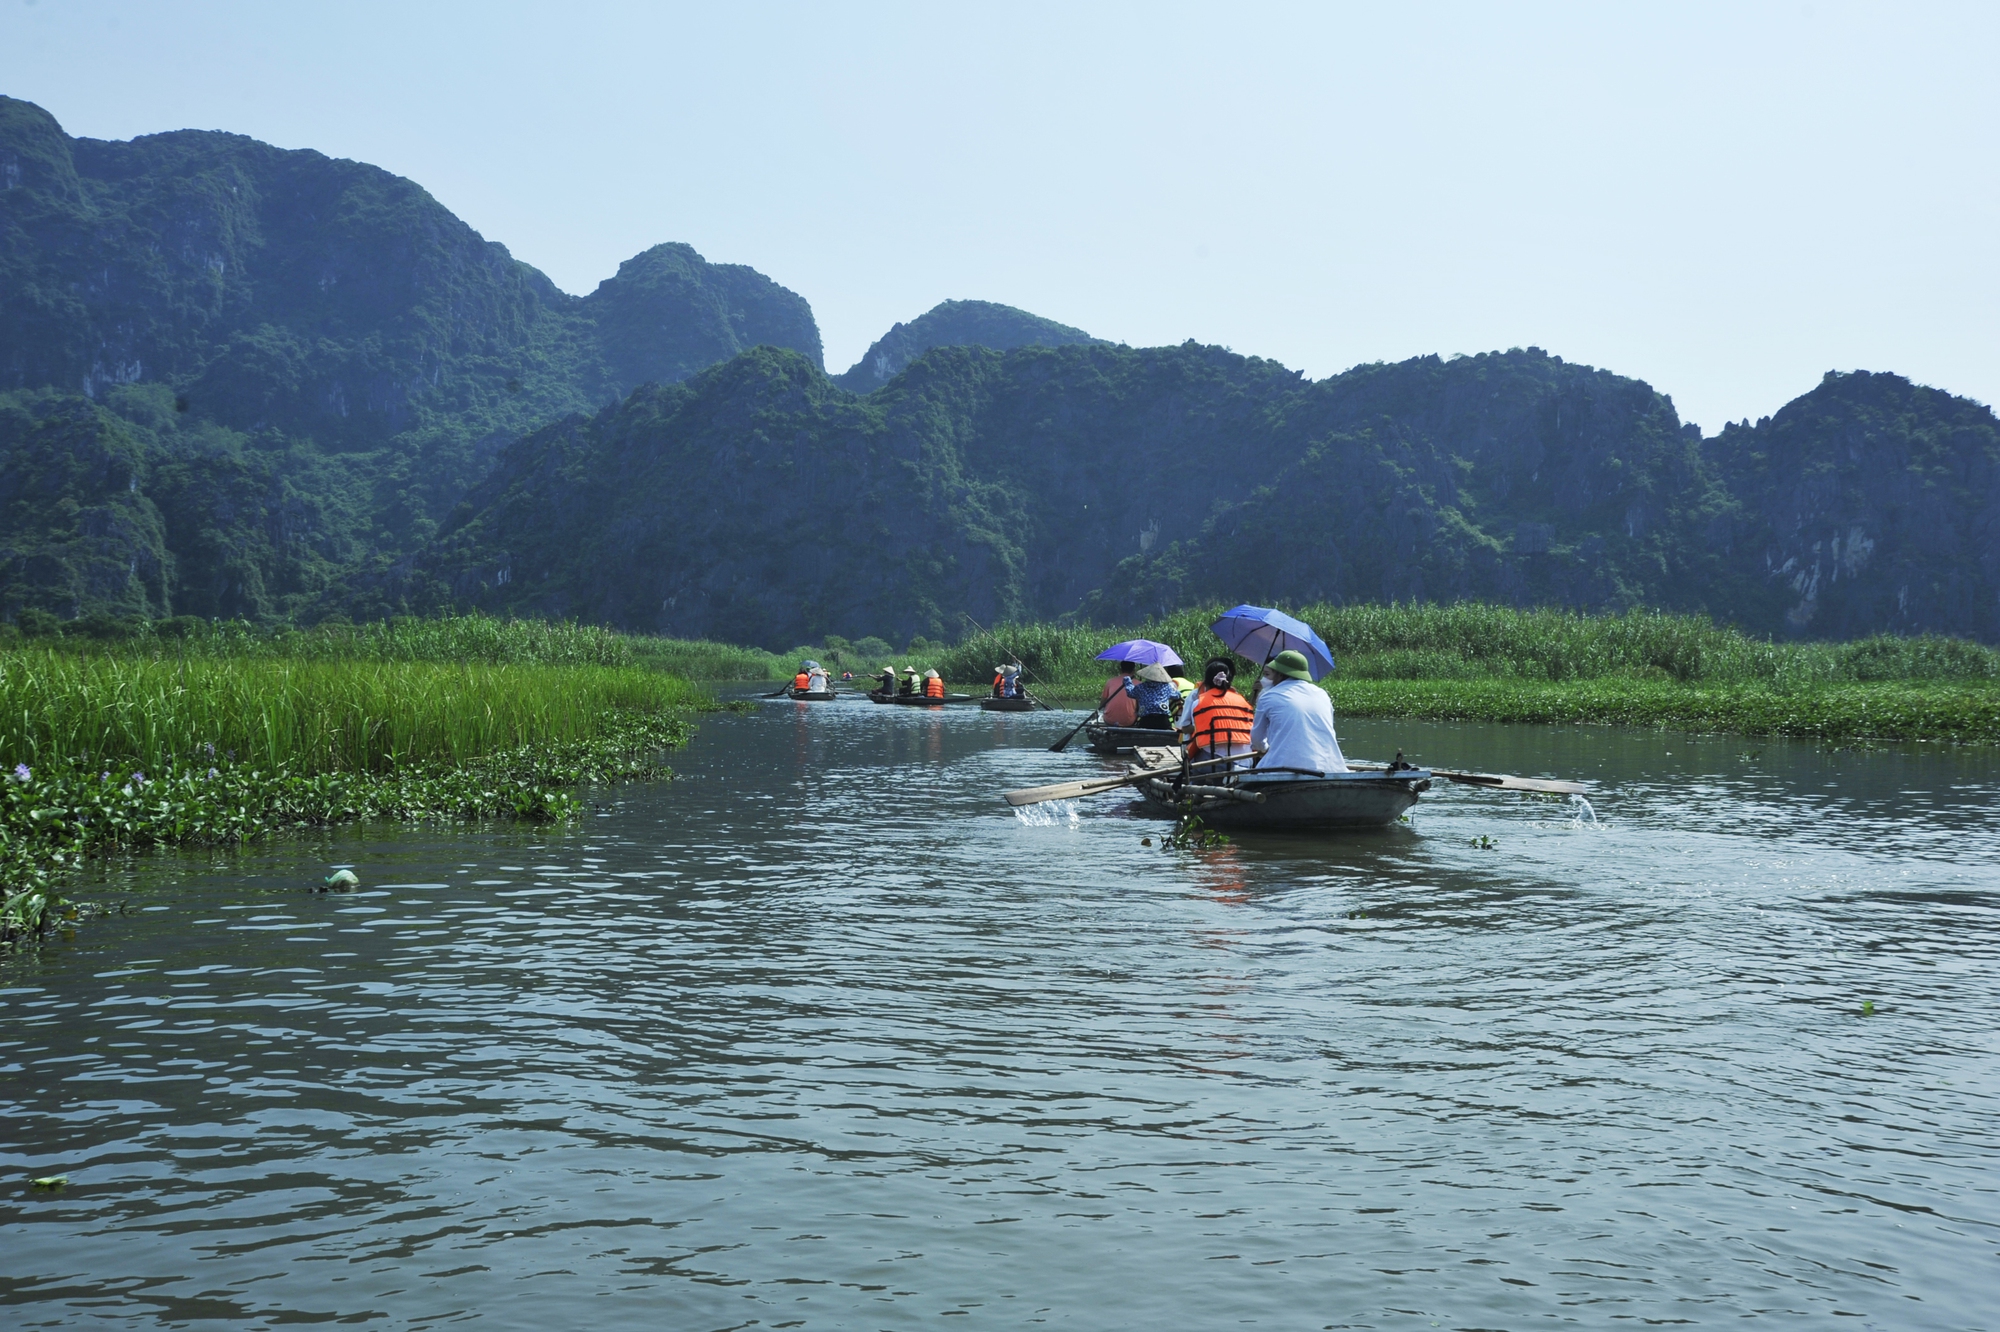 Khám phá đầm Vân Long - nơi quay bộ phim nổi tiếng Kong: Skull Island ở Ninh Bình - Ảnh 1.